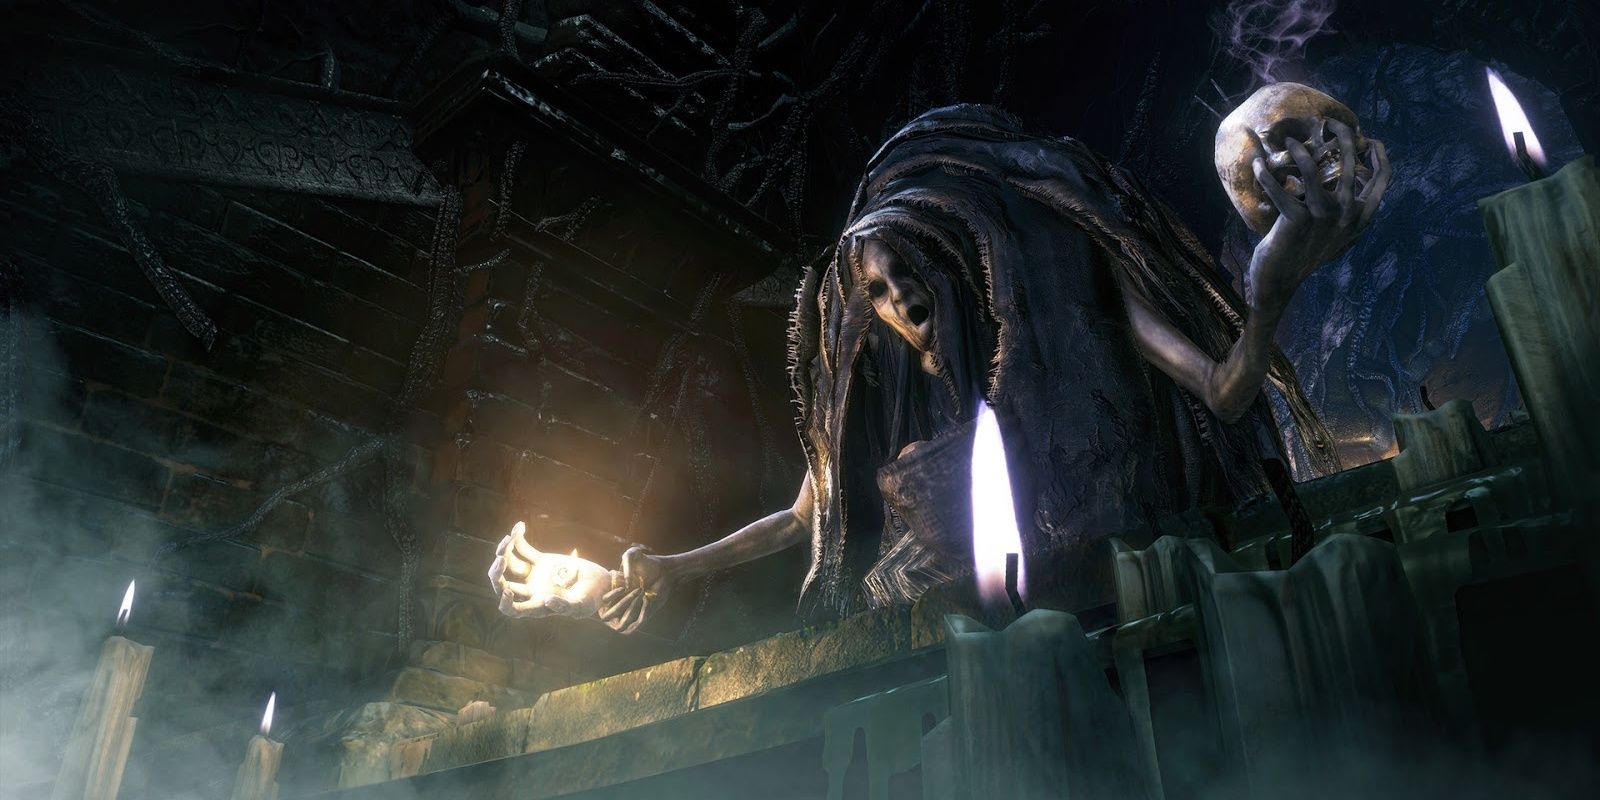 Labyrinth Ritekeeper from Bloodborne